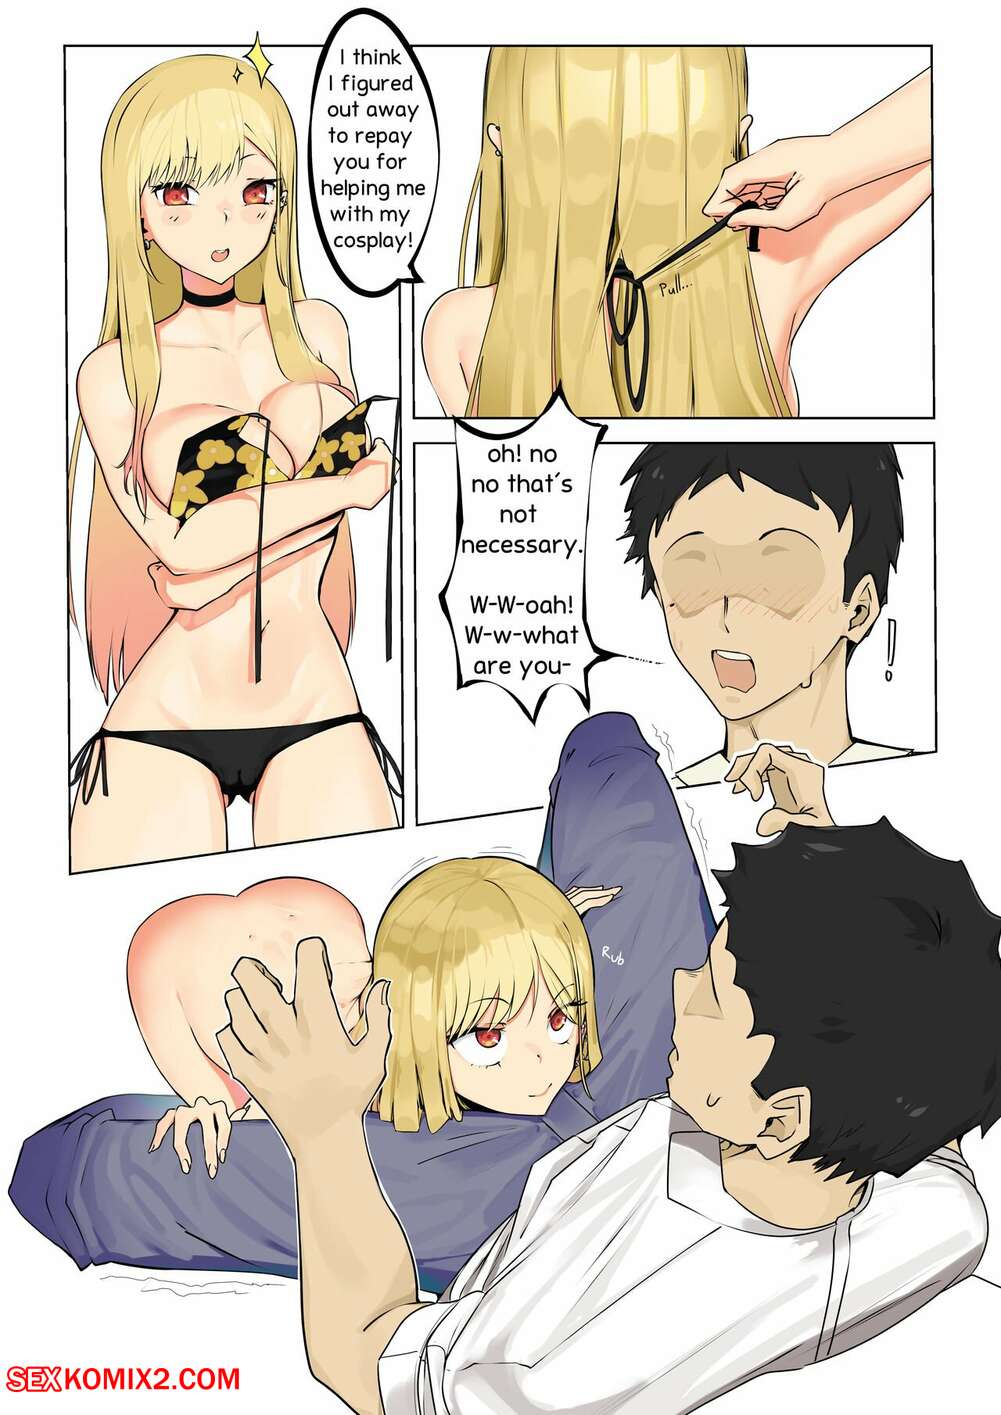 Anime blowjob porn comic